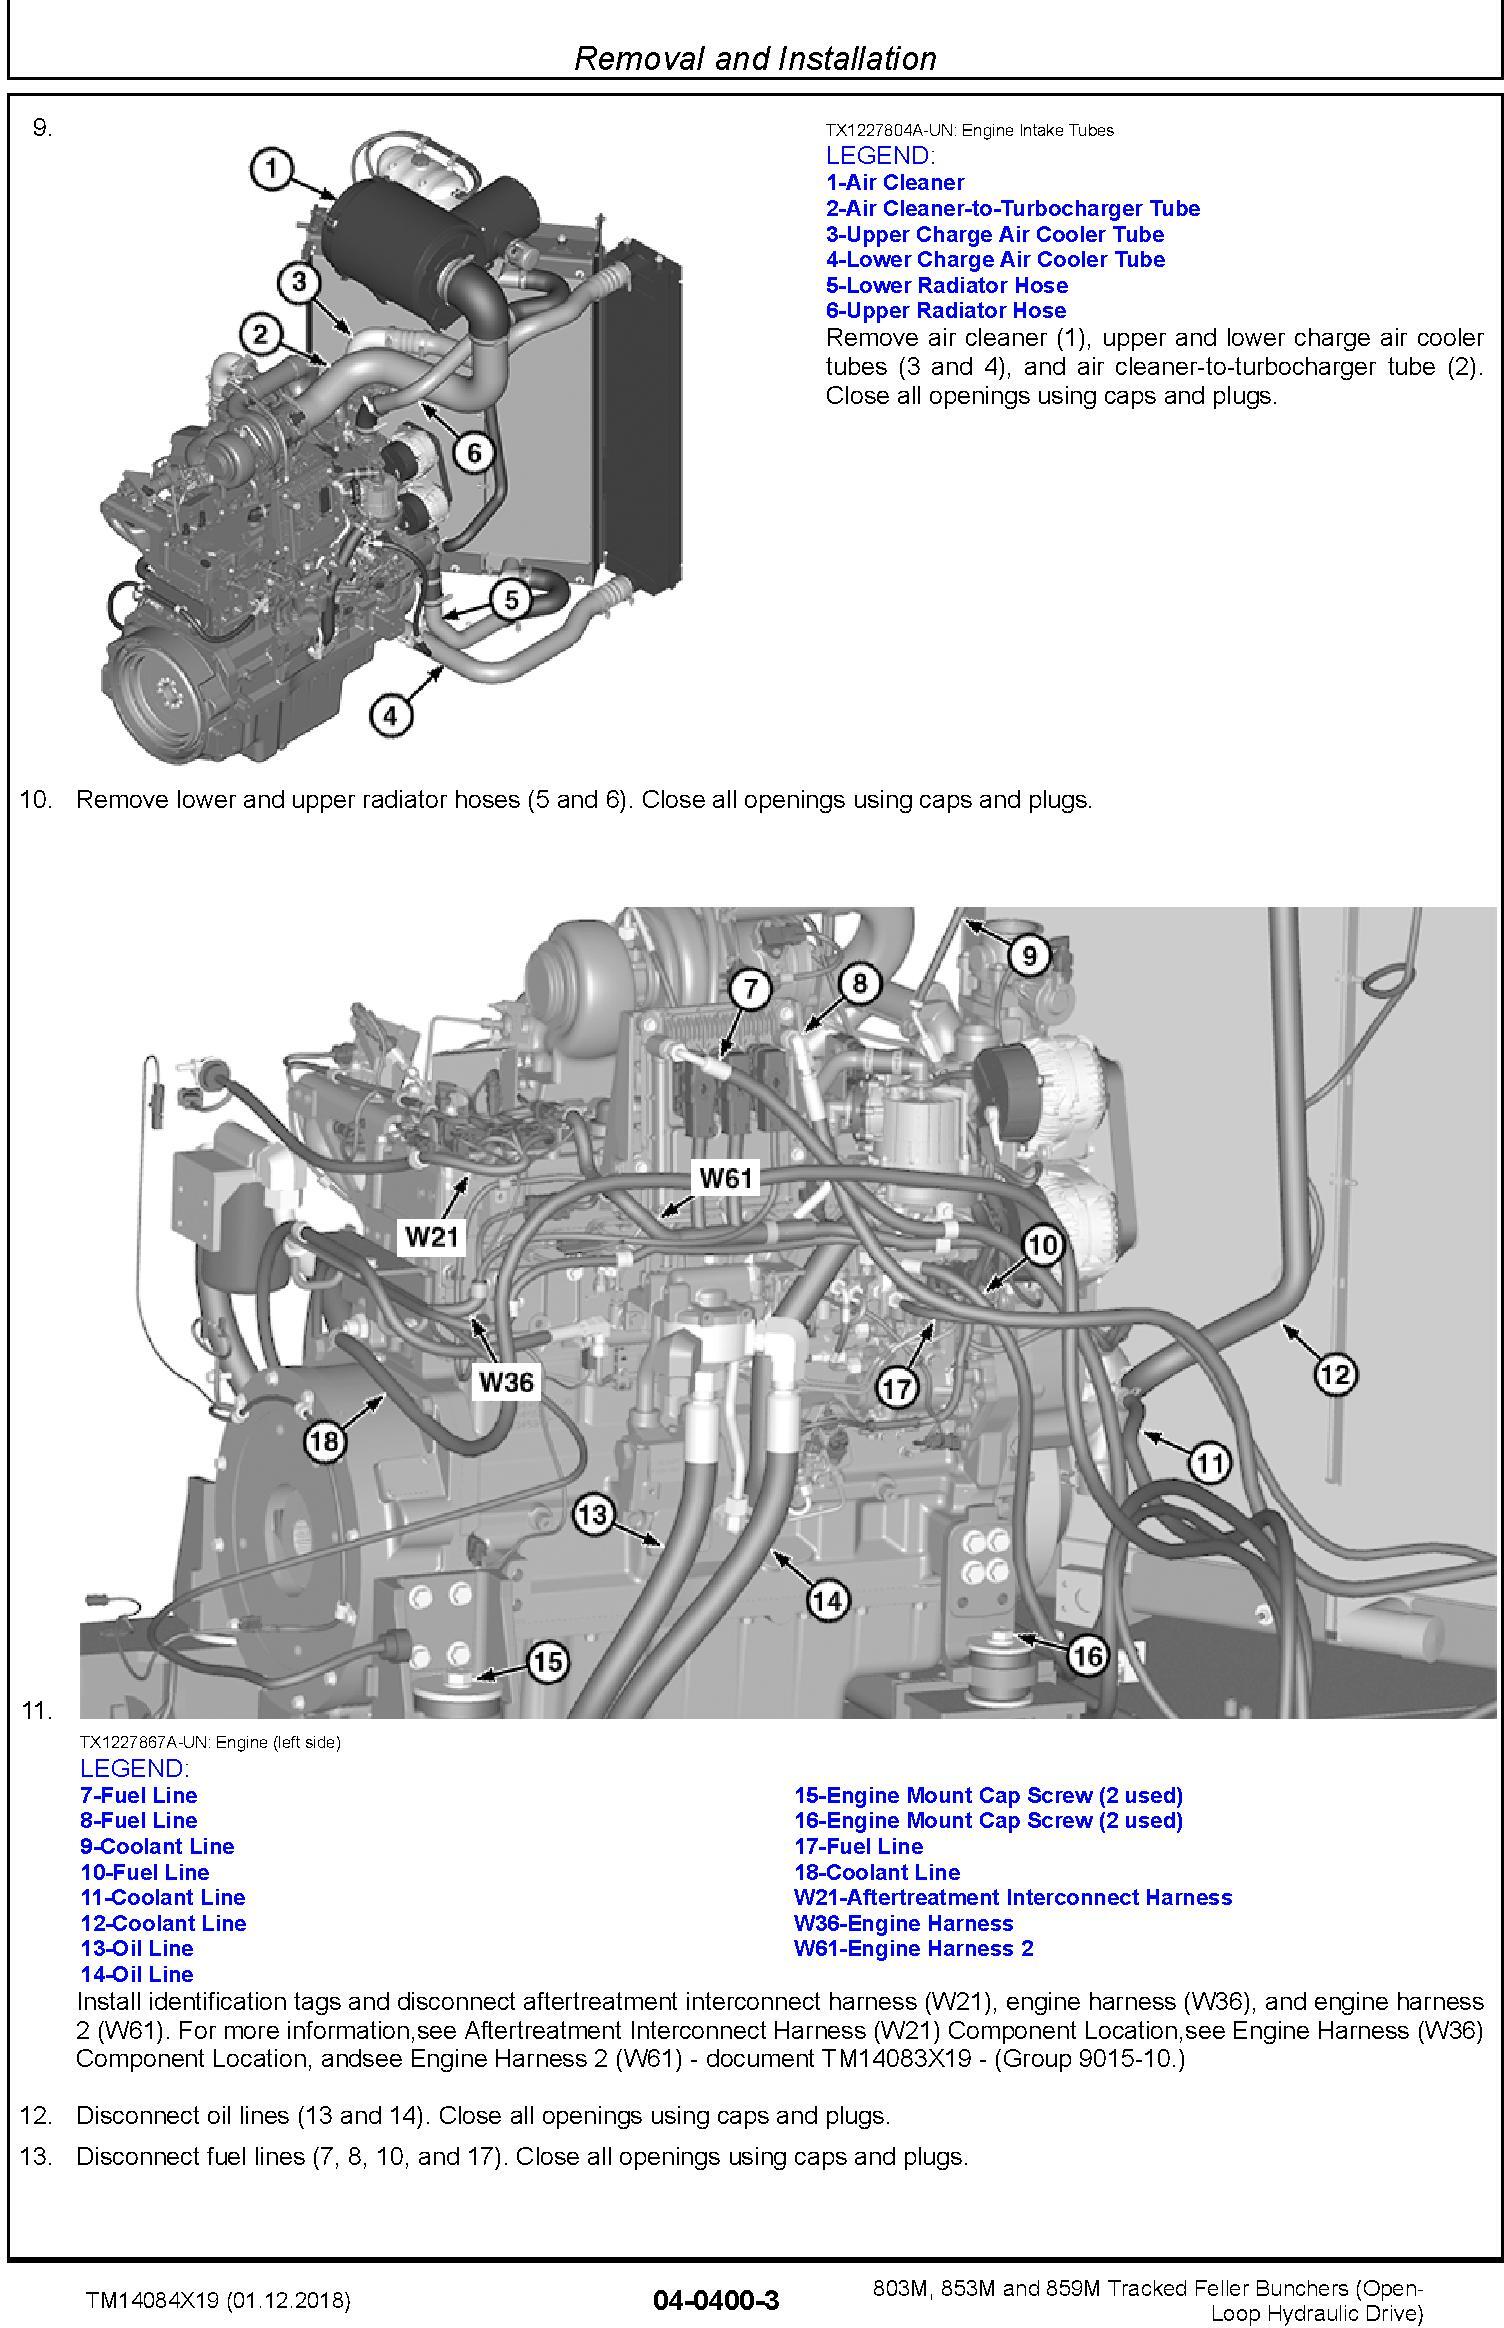 John Deere 803M,853M,859M (SN.F293917-,L343918-) Feller Buncher (Open-Loop) Repair Manual TM14084X19 - 2